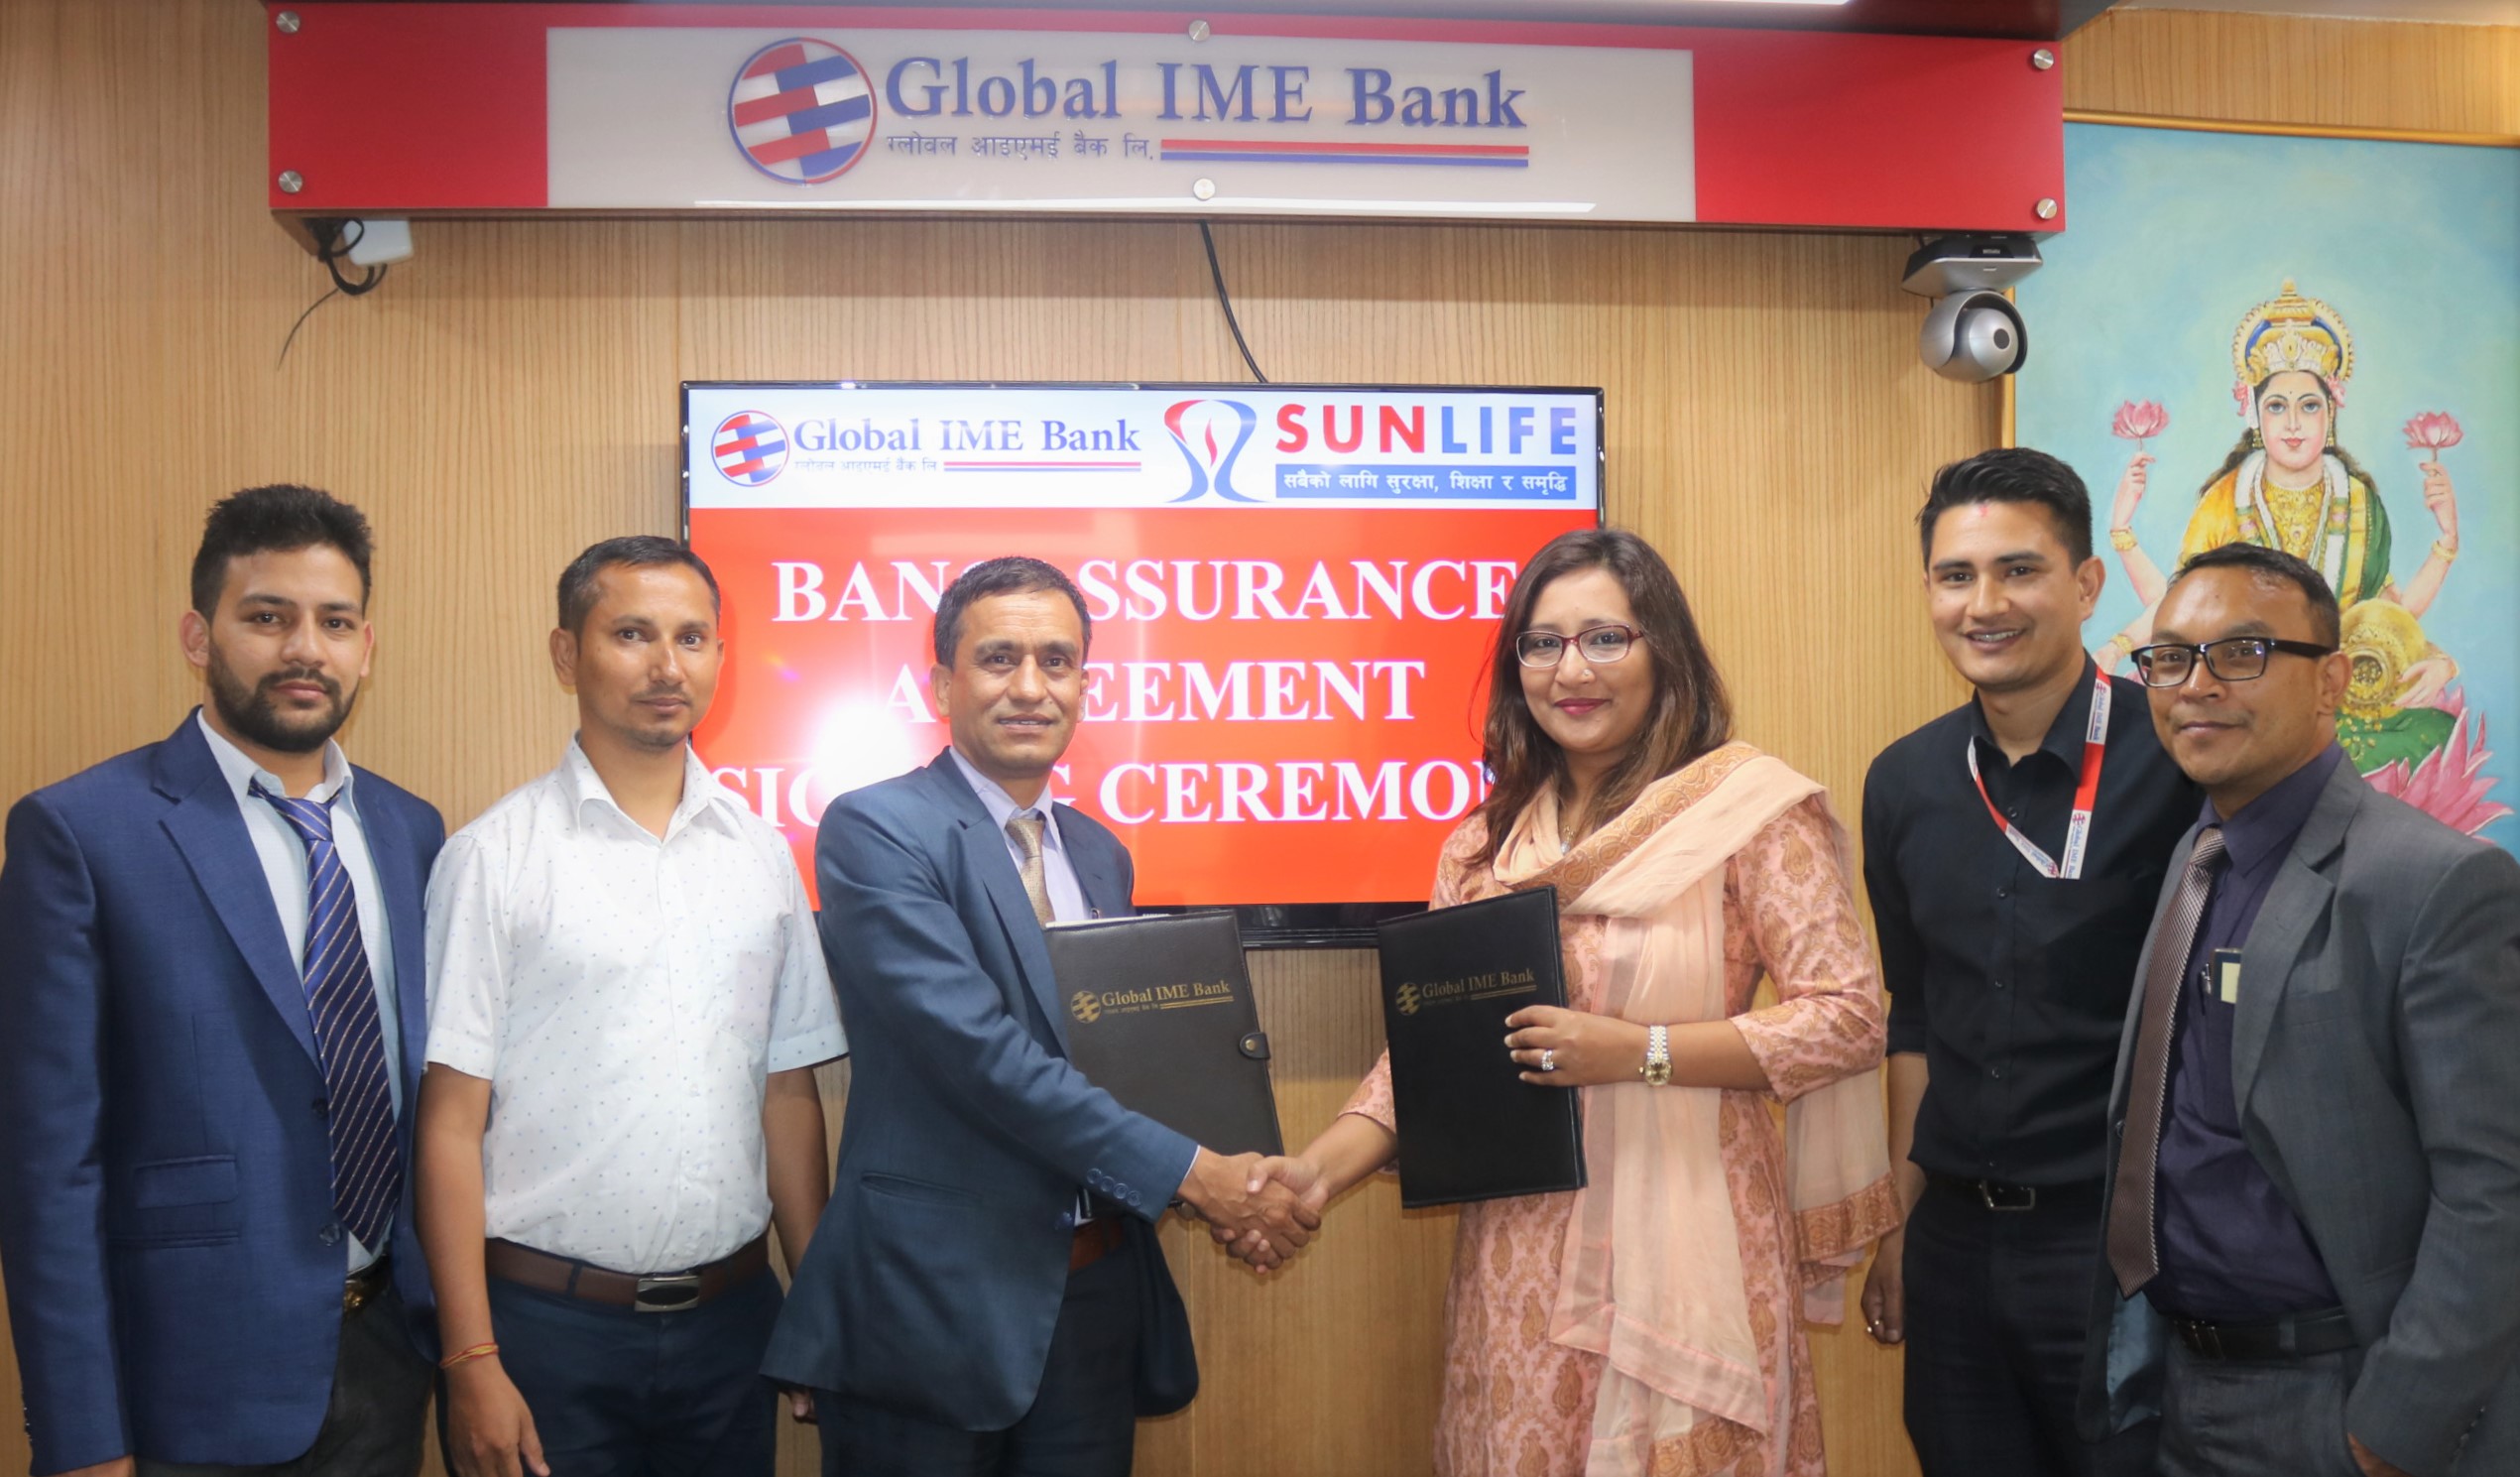 ग्लोबल आइएमई बैंक र सन नेपाल लाइफ इन्स्योरेन्स कम्पनीबीच सम्झौता